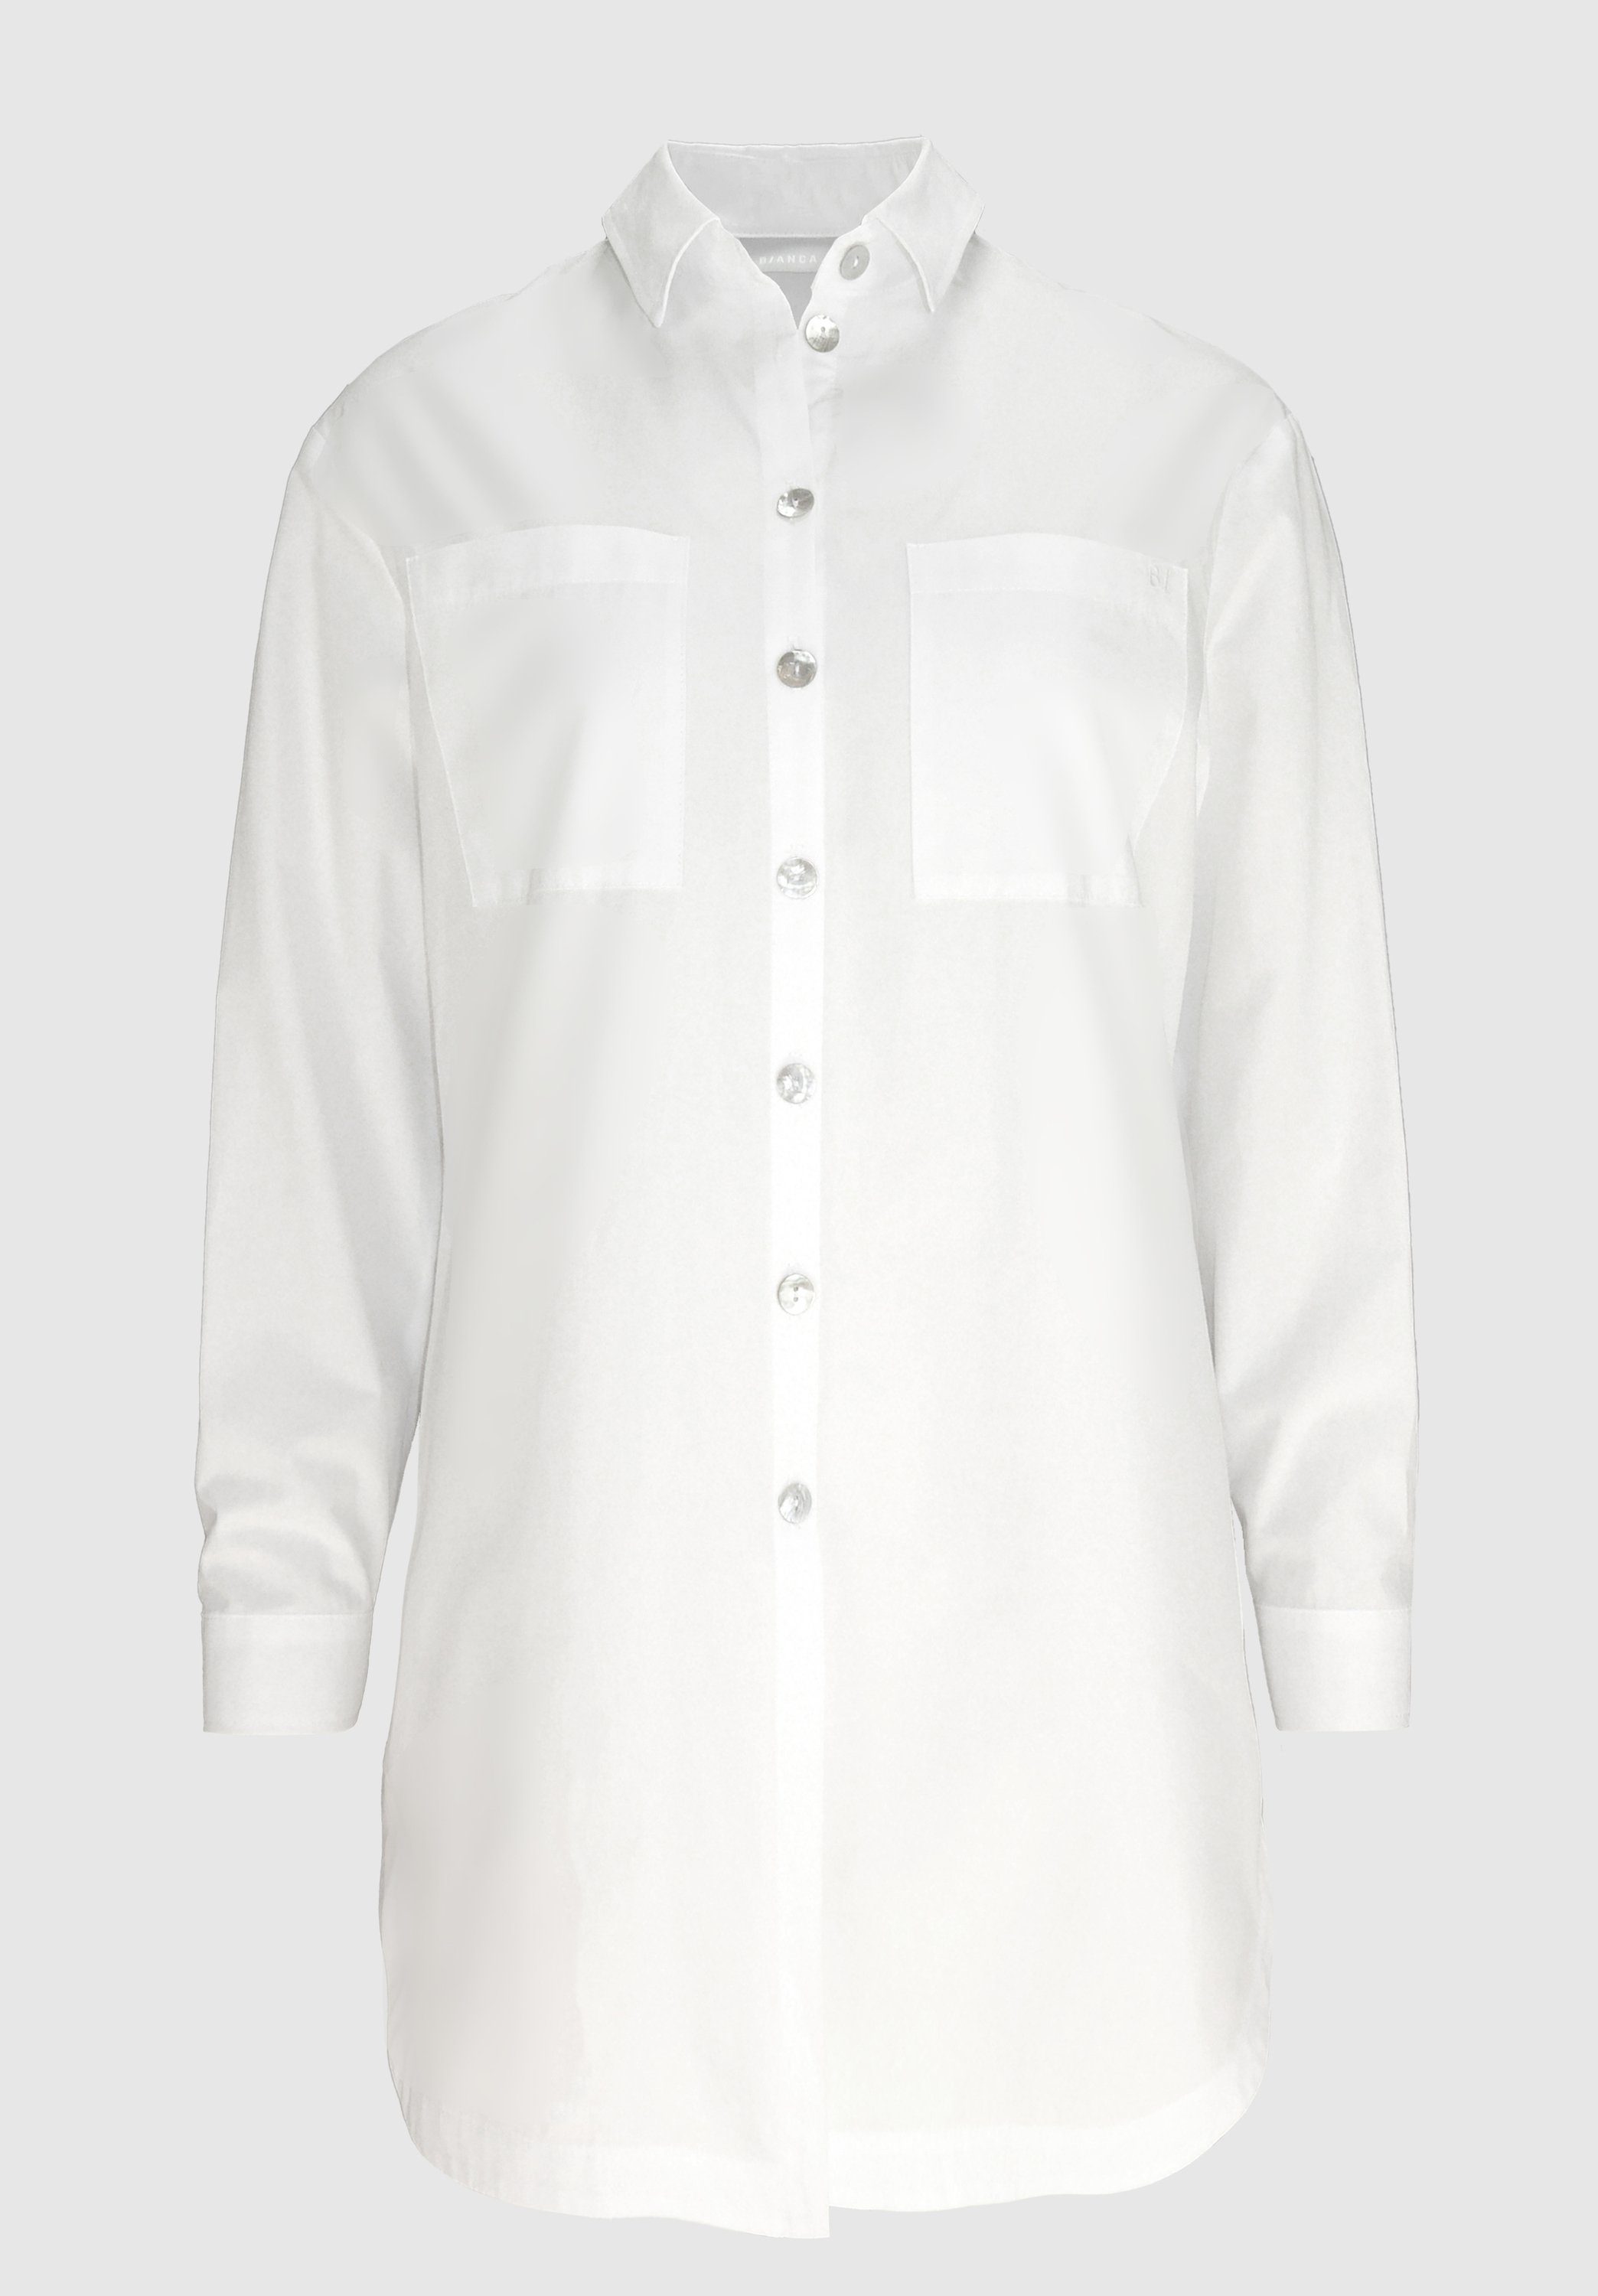 Hemdbluse mit moderner, stylischen längerer white in ADELA Details bianca Form